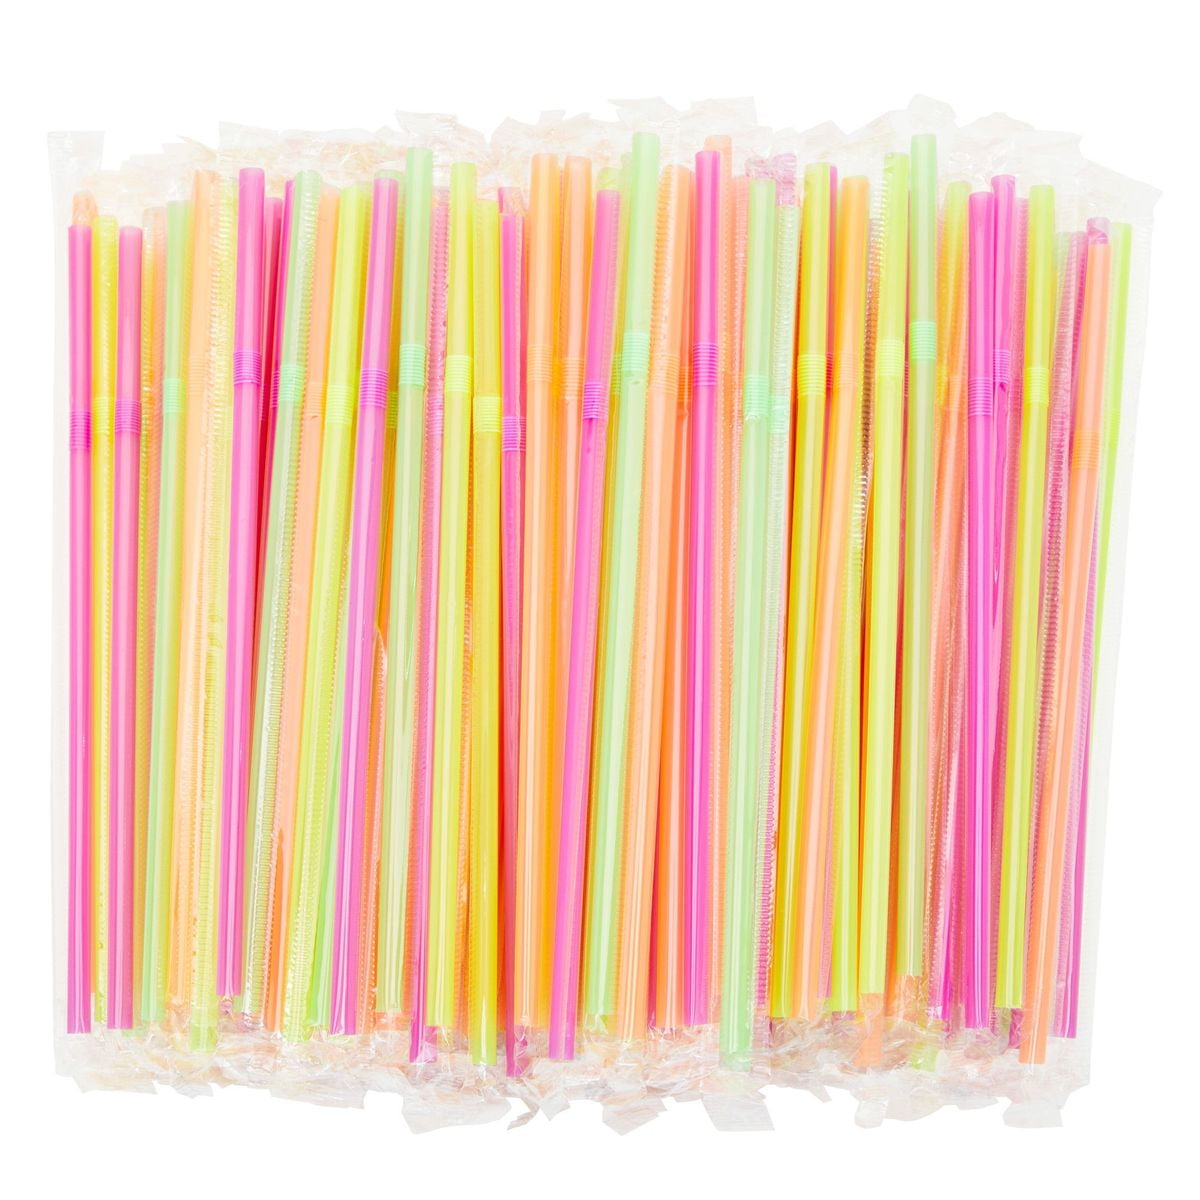 500g soft straws tube beads bulk